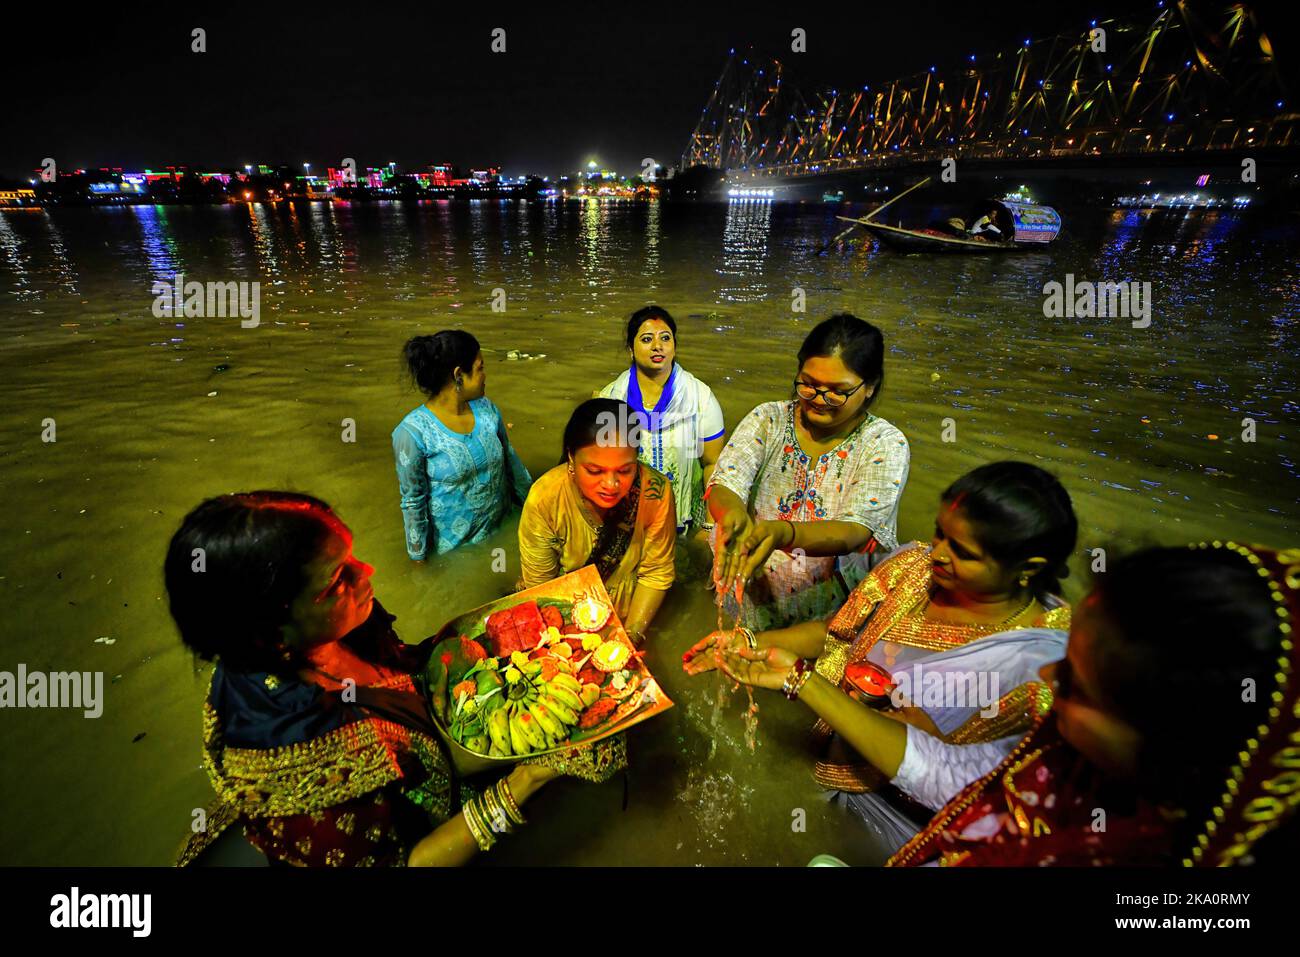 Kalkutta, Indien. 30. Oktober 2022. Hinduistische Anhänger werden gesehen, wie sie Abendrituale anlässlich der Chhat Puja im Ganga River durchführen. Chhath ist ein hinduistisches Fest, bei dem der Sonne Gebete gewidmet werden, um Dankbarkeit und Dankbarkeit für die Überwindung der Hürden des Lebens während des ganzen Jahres zu zeigen. Den ganzen Tag fasten Hindu-Anhänger suchen nach dem Segen der Lord Sun gemäß der hinduistischen Mythologie. Da das Festival der Sonne gewidmet ist, findet es jedes Jahr während der Sonnenaufgang und -Untergang Ende Oktober/Mitte November statt. (Foto: Avishek das/SOPA Images/Sipa USA) Quelle: SIPA USA/Alamy Live News Stockfoto